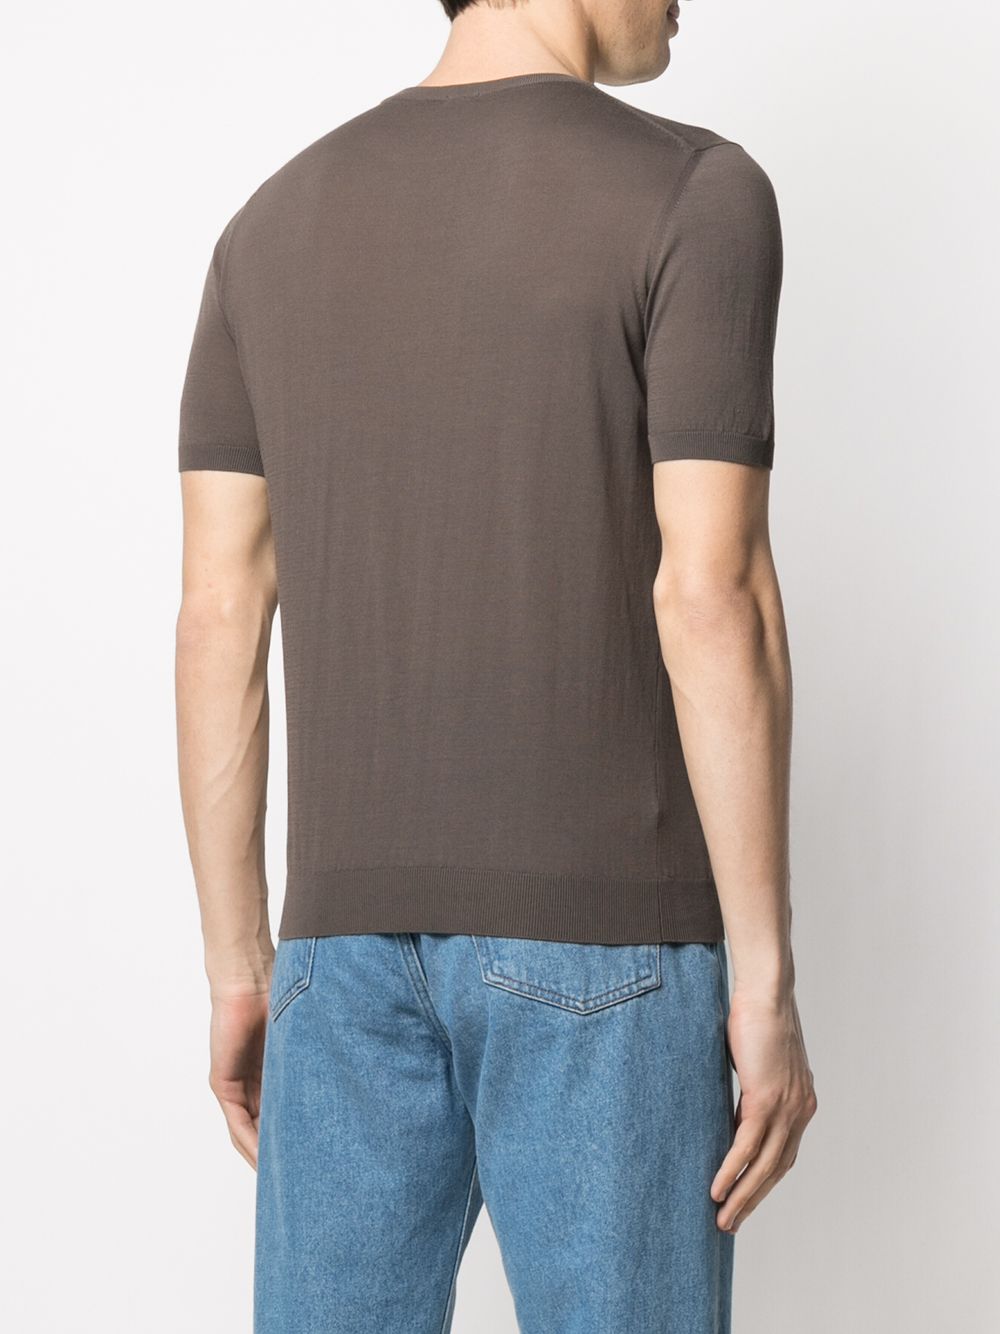 T-shirt tortora in maglia